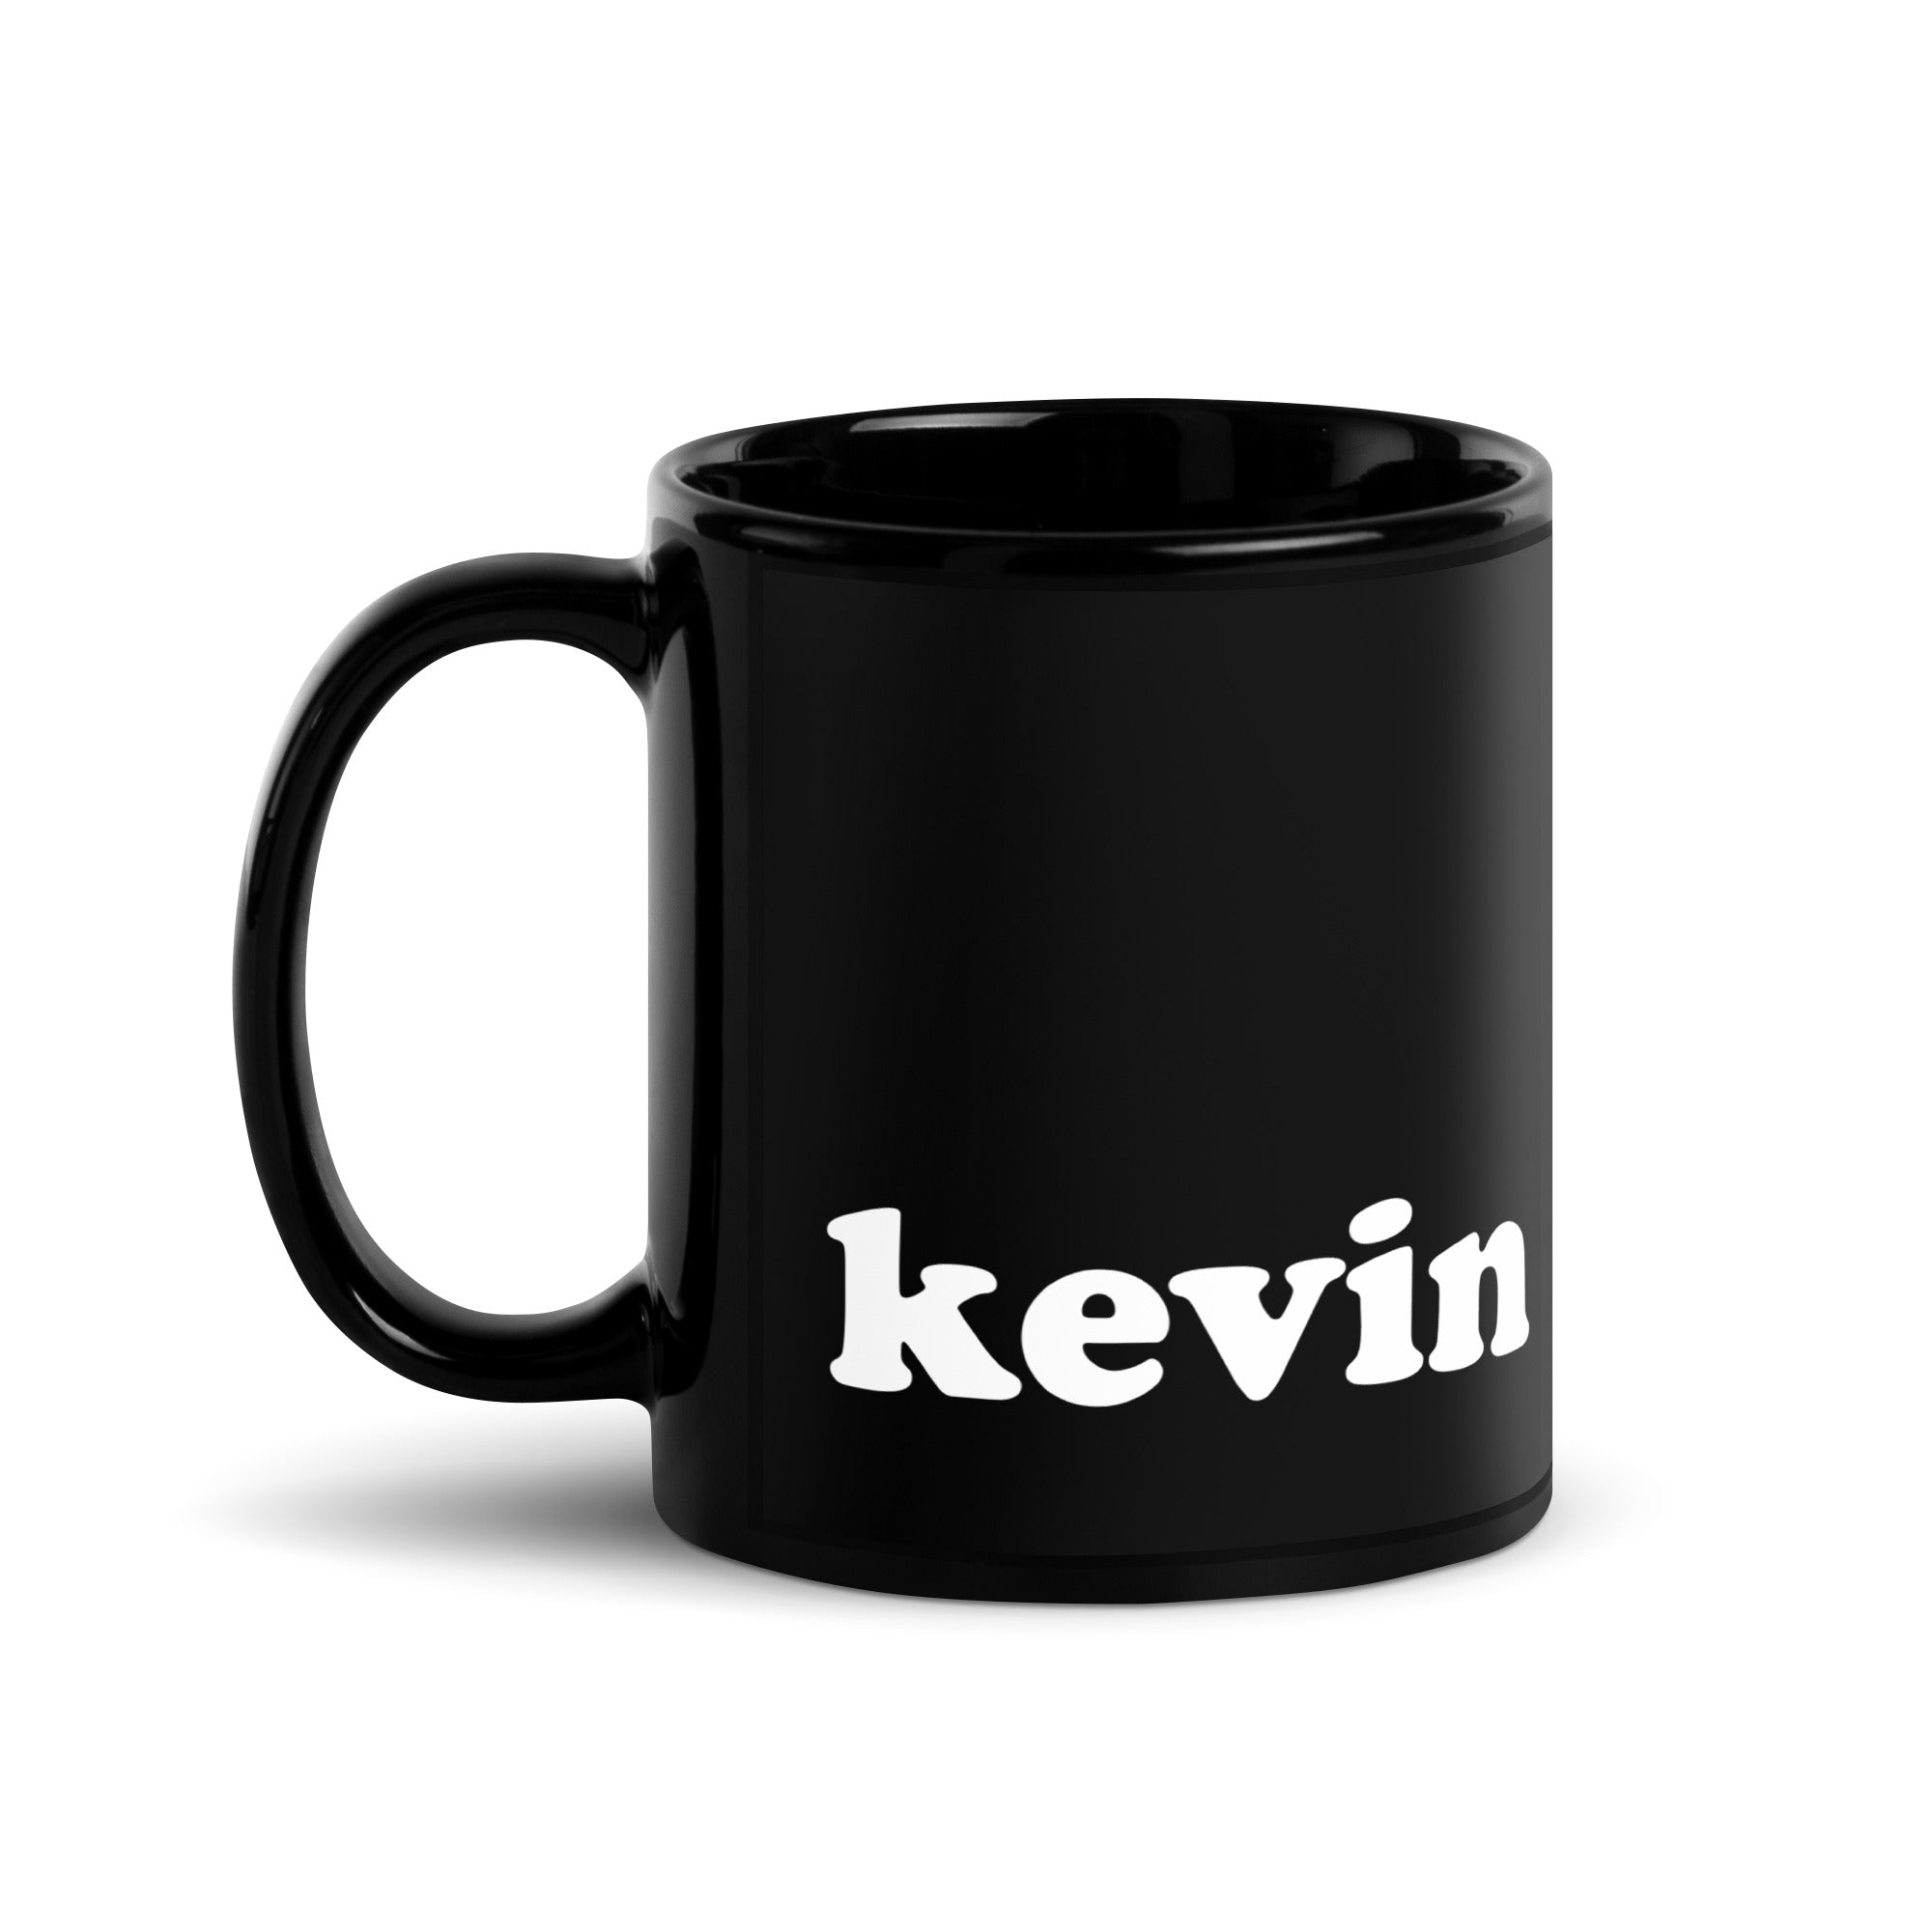 KEVIN Black Glossy Mug